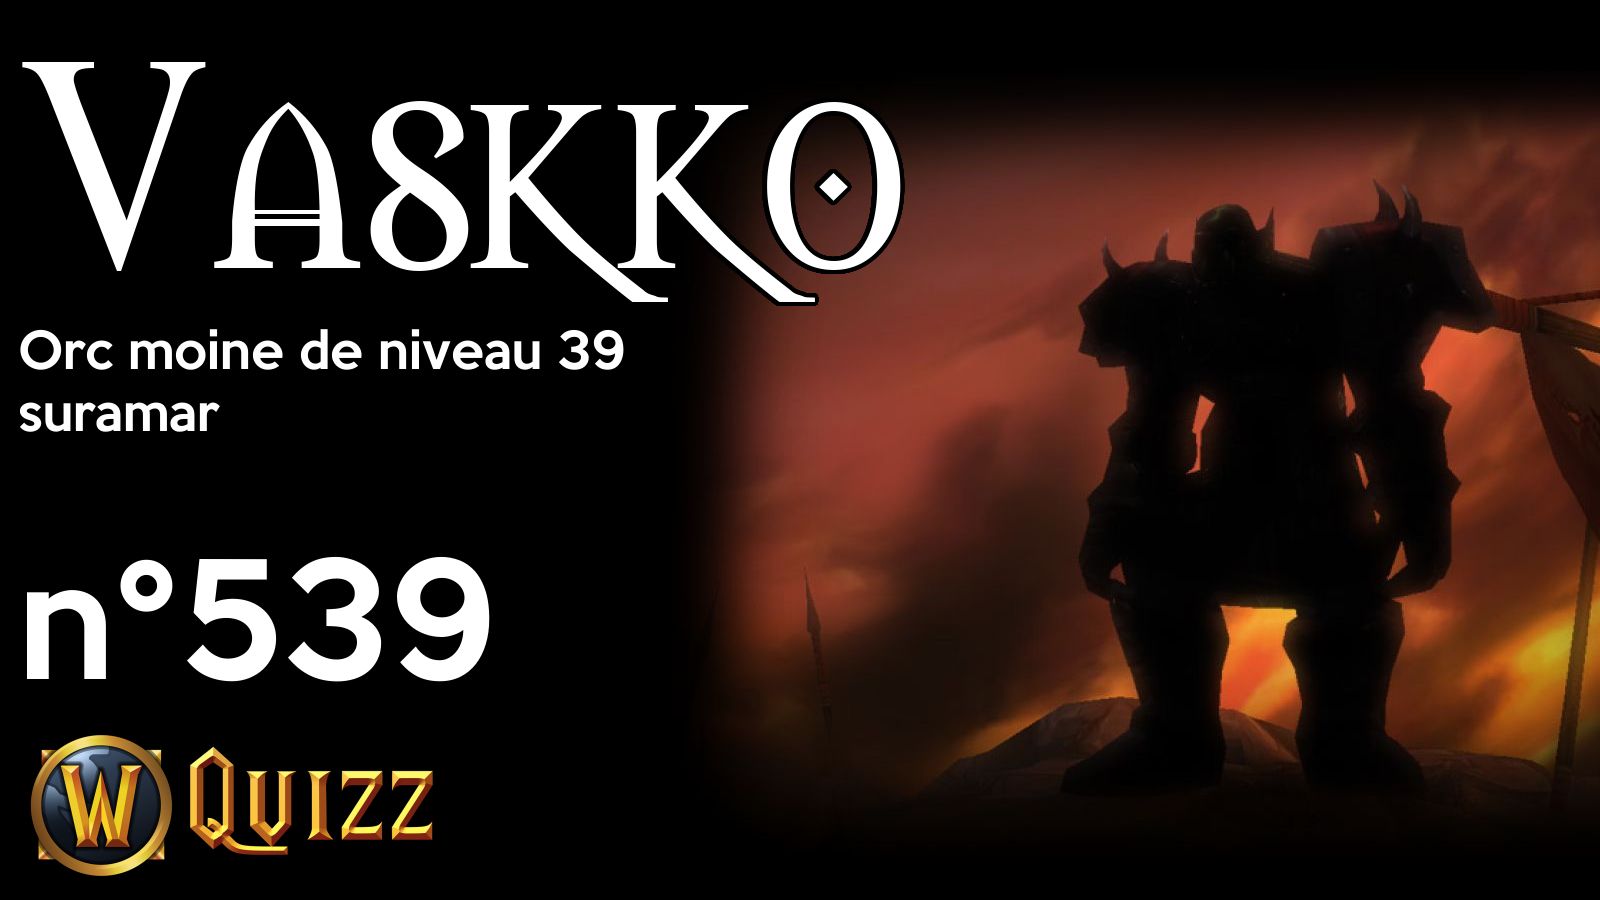 Vaskko, Orc moine de niveau 39, suramar